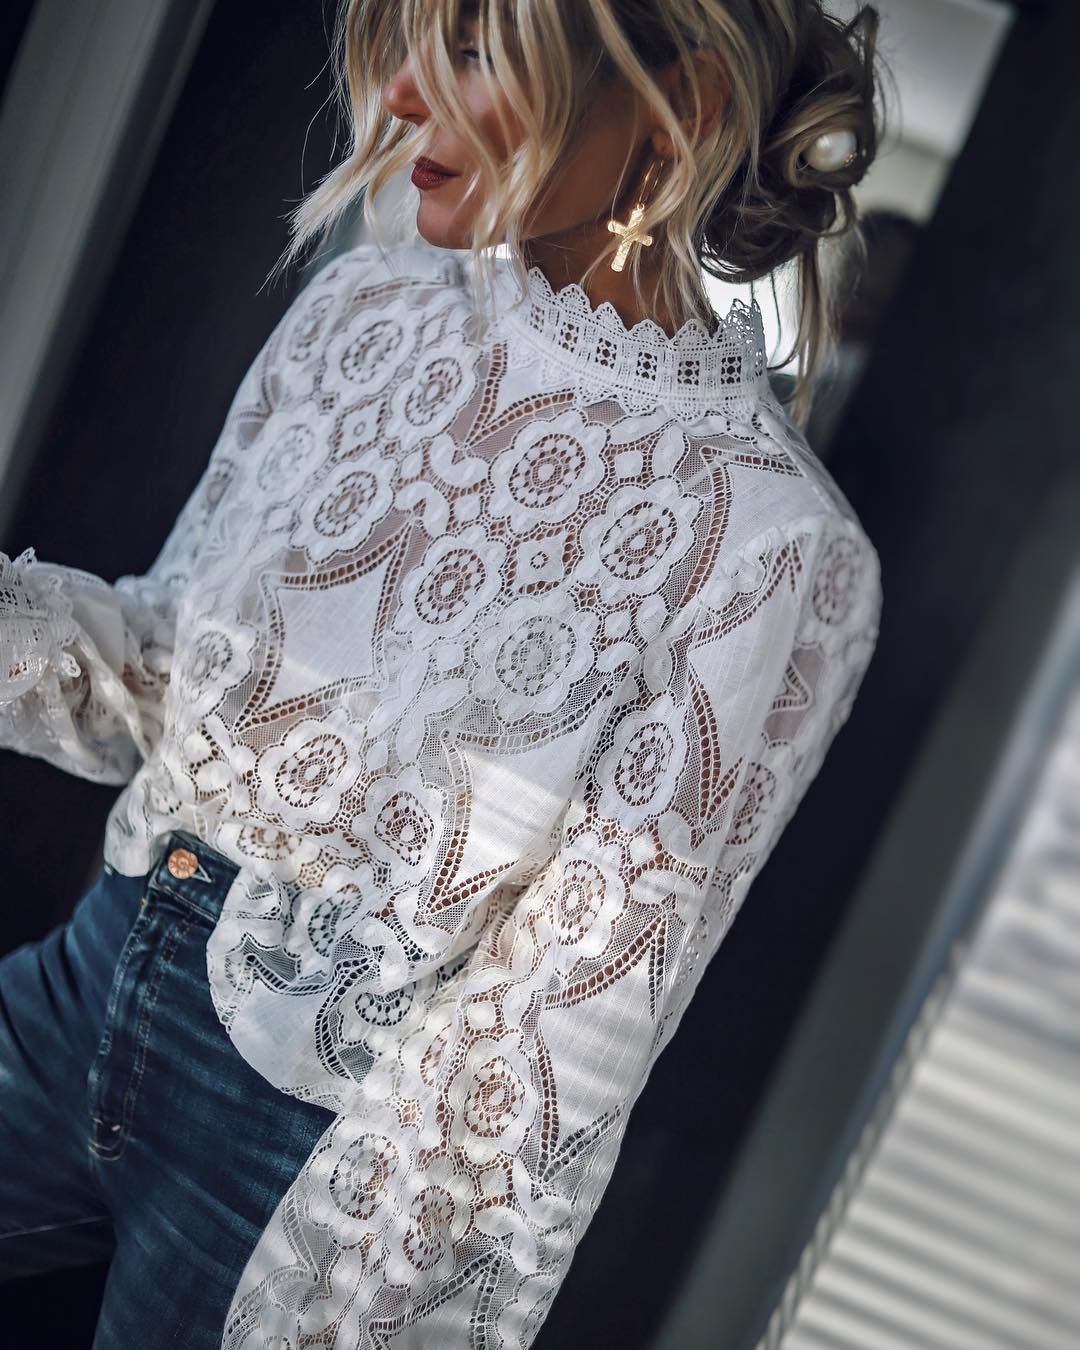 violencia he equivocado libro de texto La camisa blanca de encaje de Zara más vendida de la temporada ya está por  todo Instagram -Zara arrasa en Instagram con esta camisa blanca de encaje